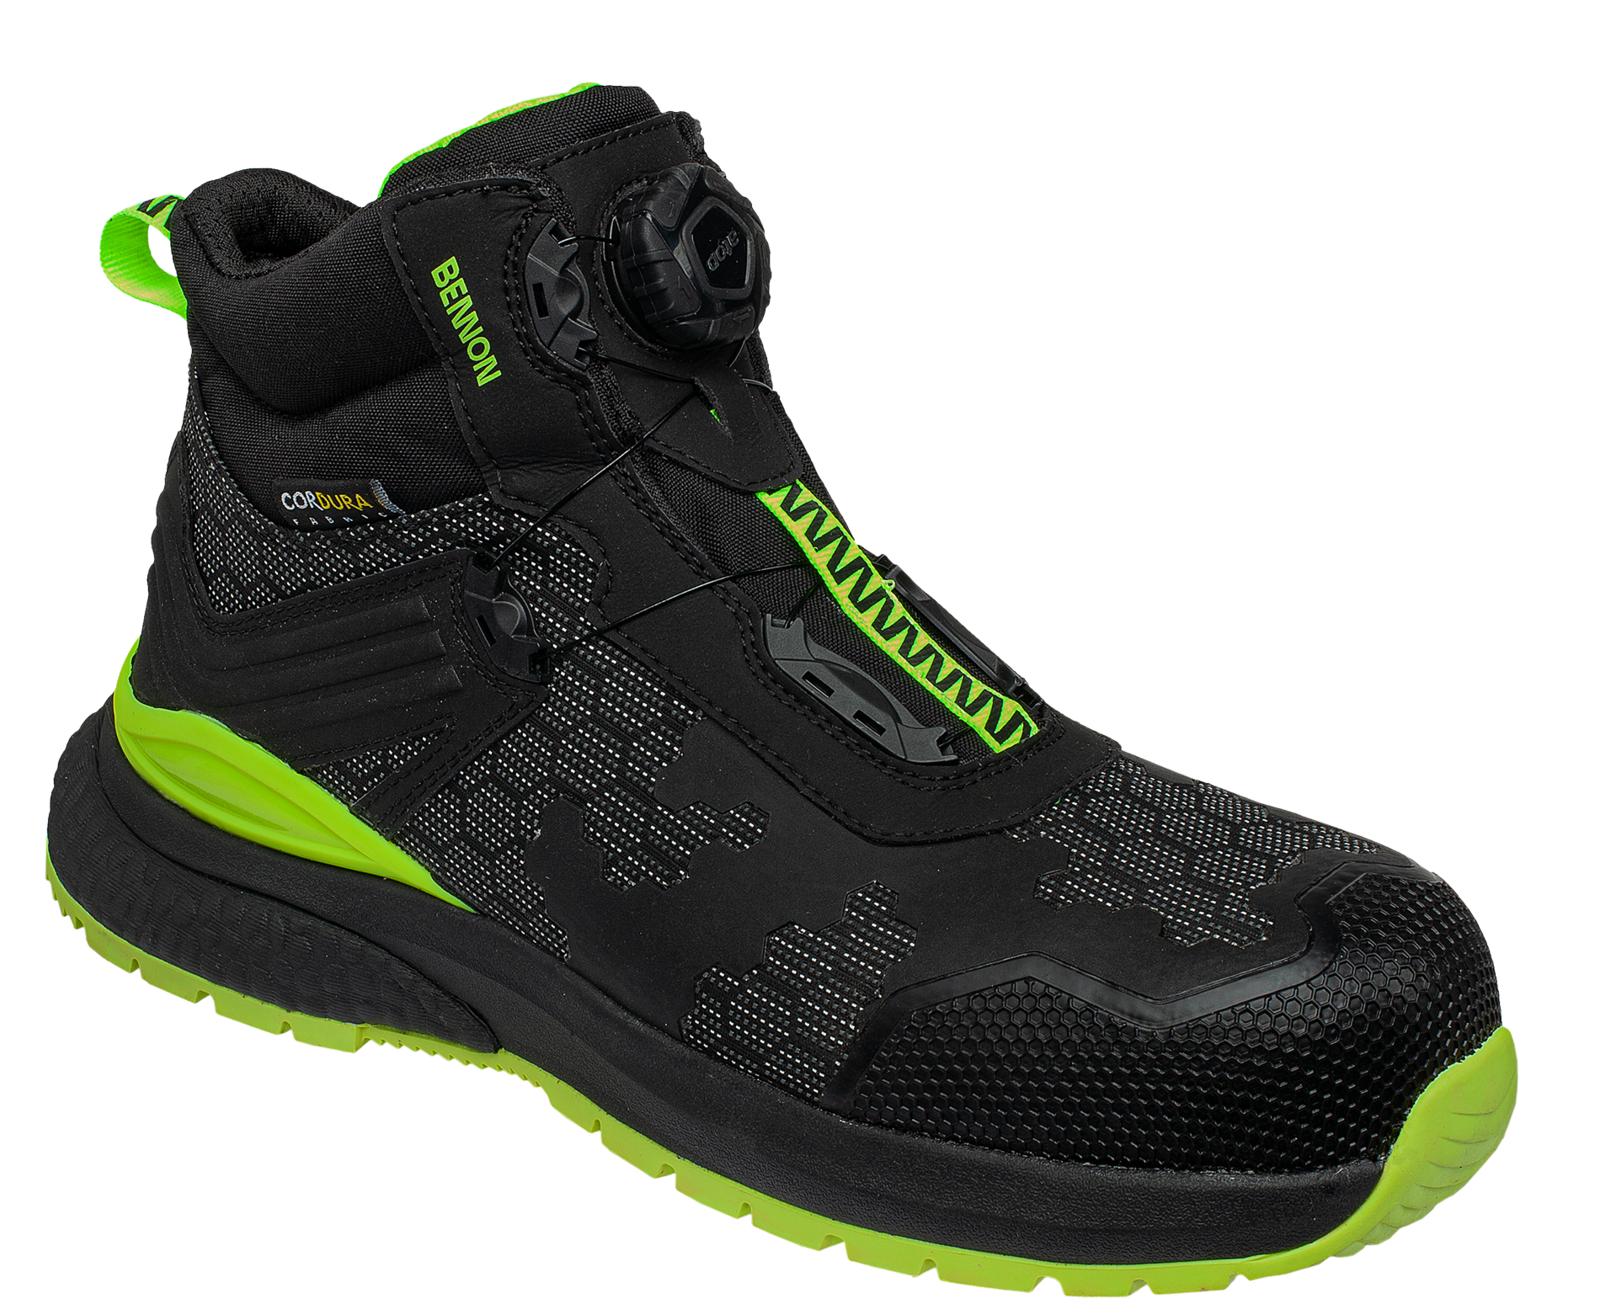 Bezpečnostná obuv Bennon Predator S3 ESD High - veľkosť: 37, farba: čierna/zelená